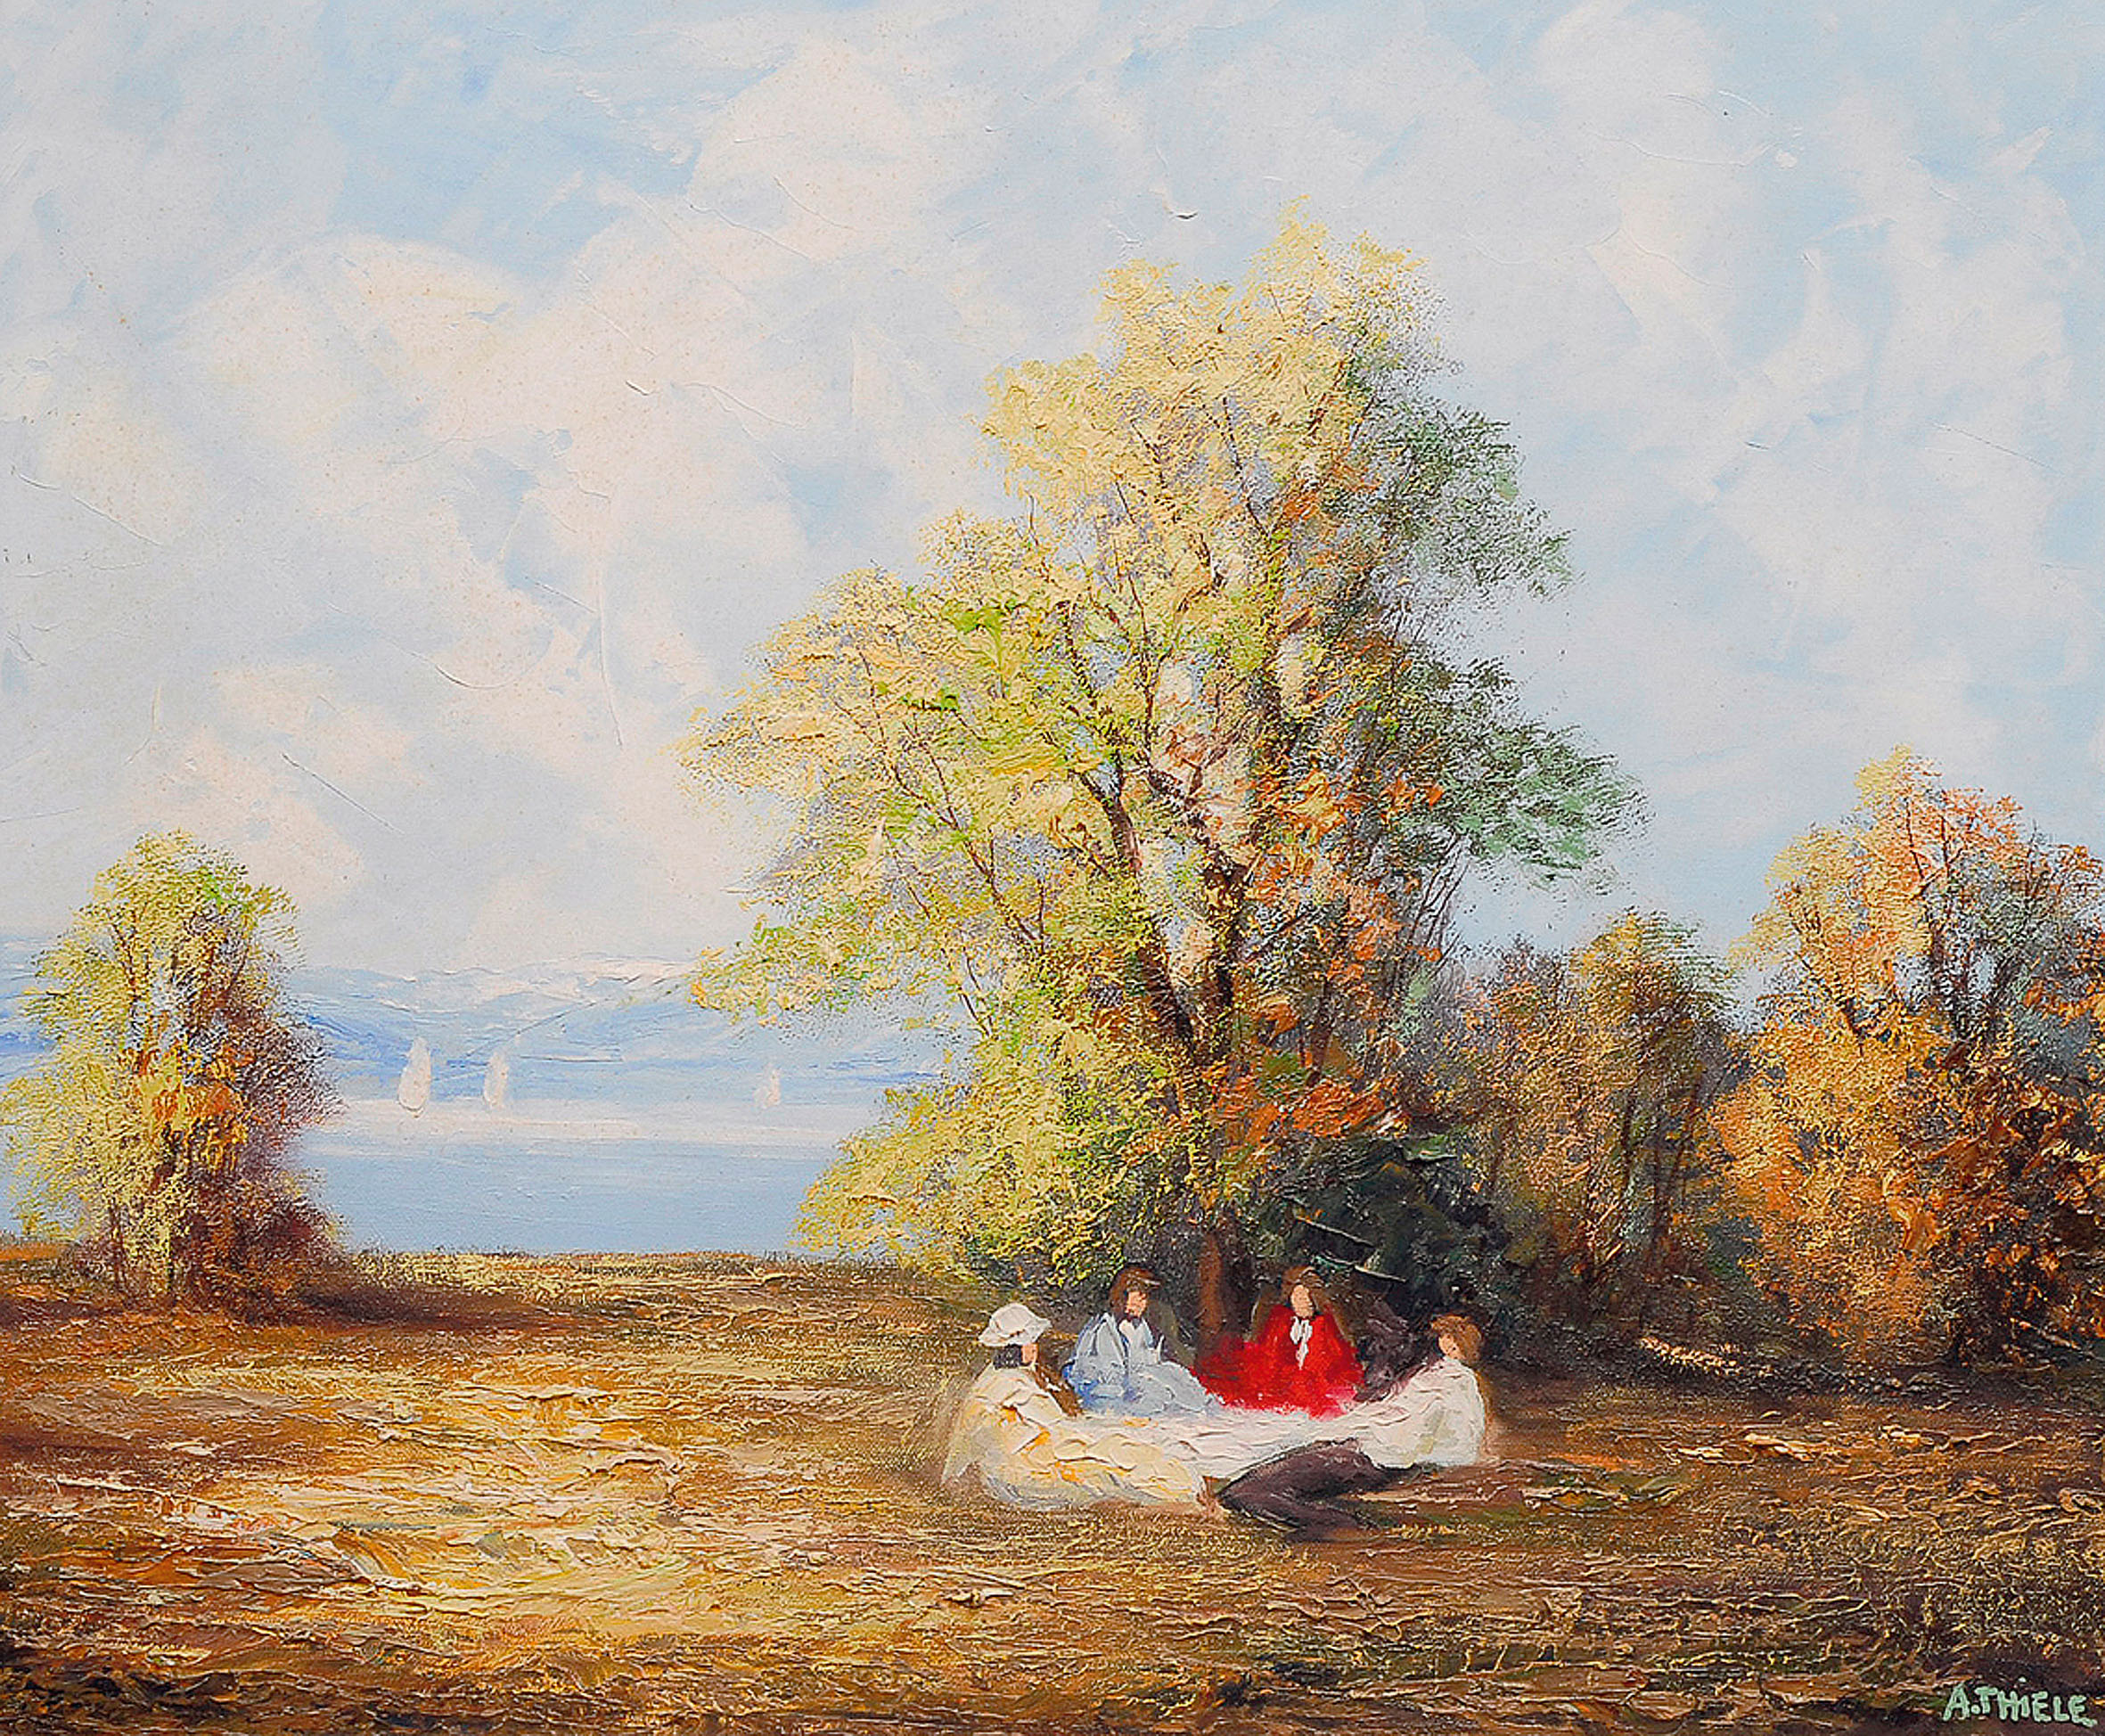 A picknick at the lake